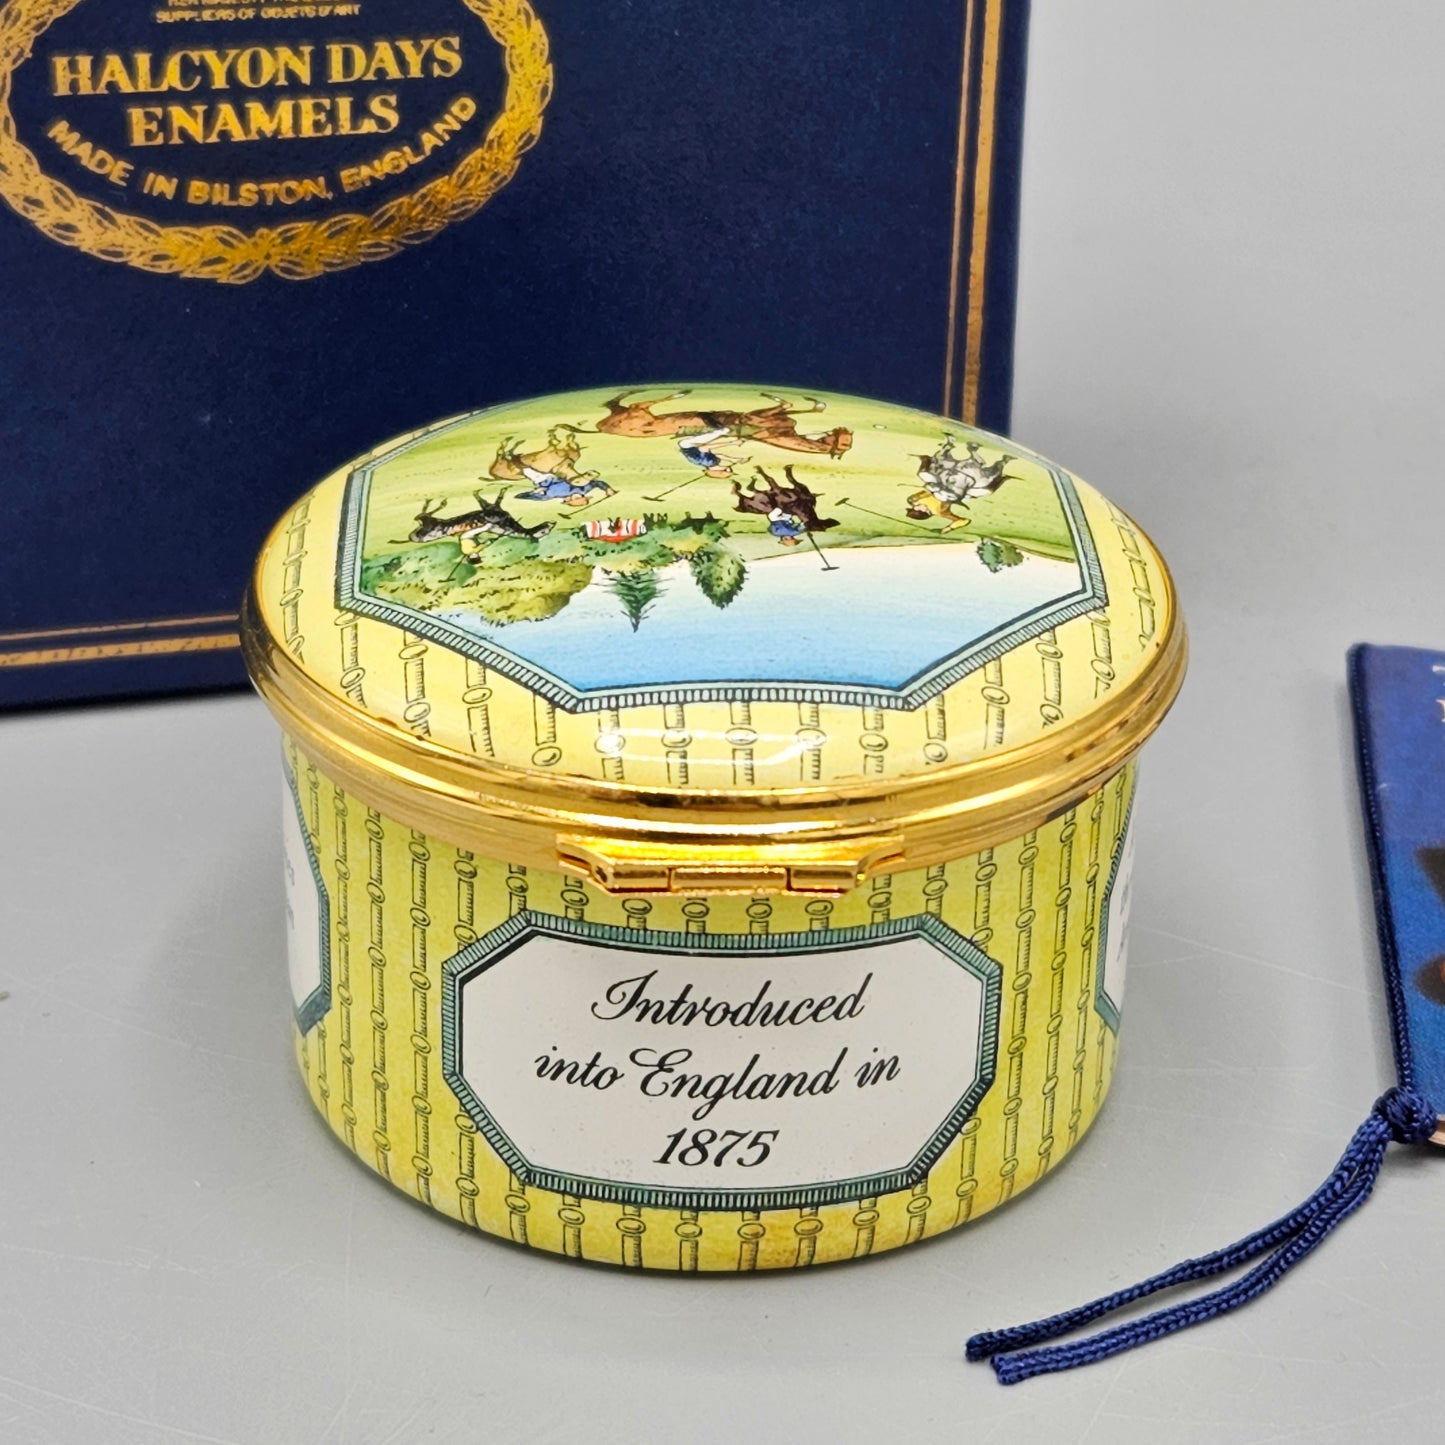 Halcyon Days Enamel Polo Box